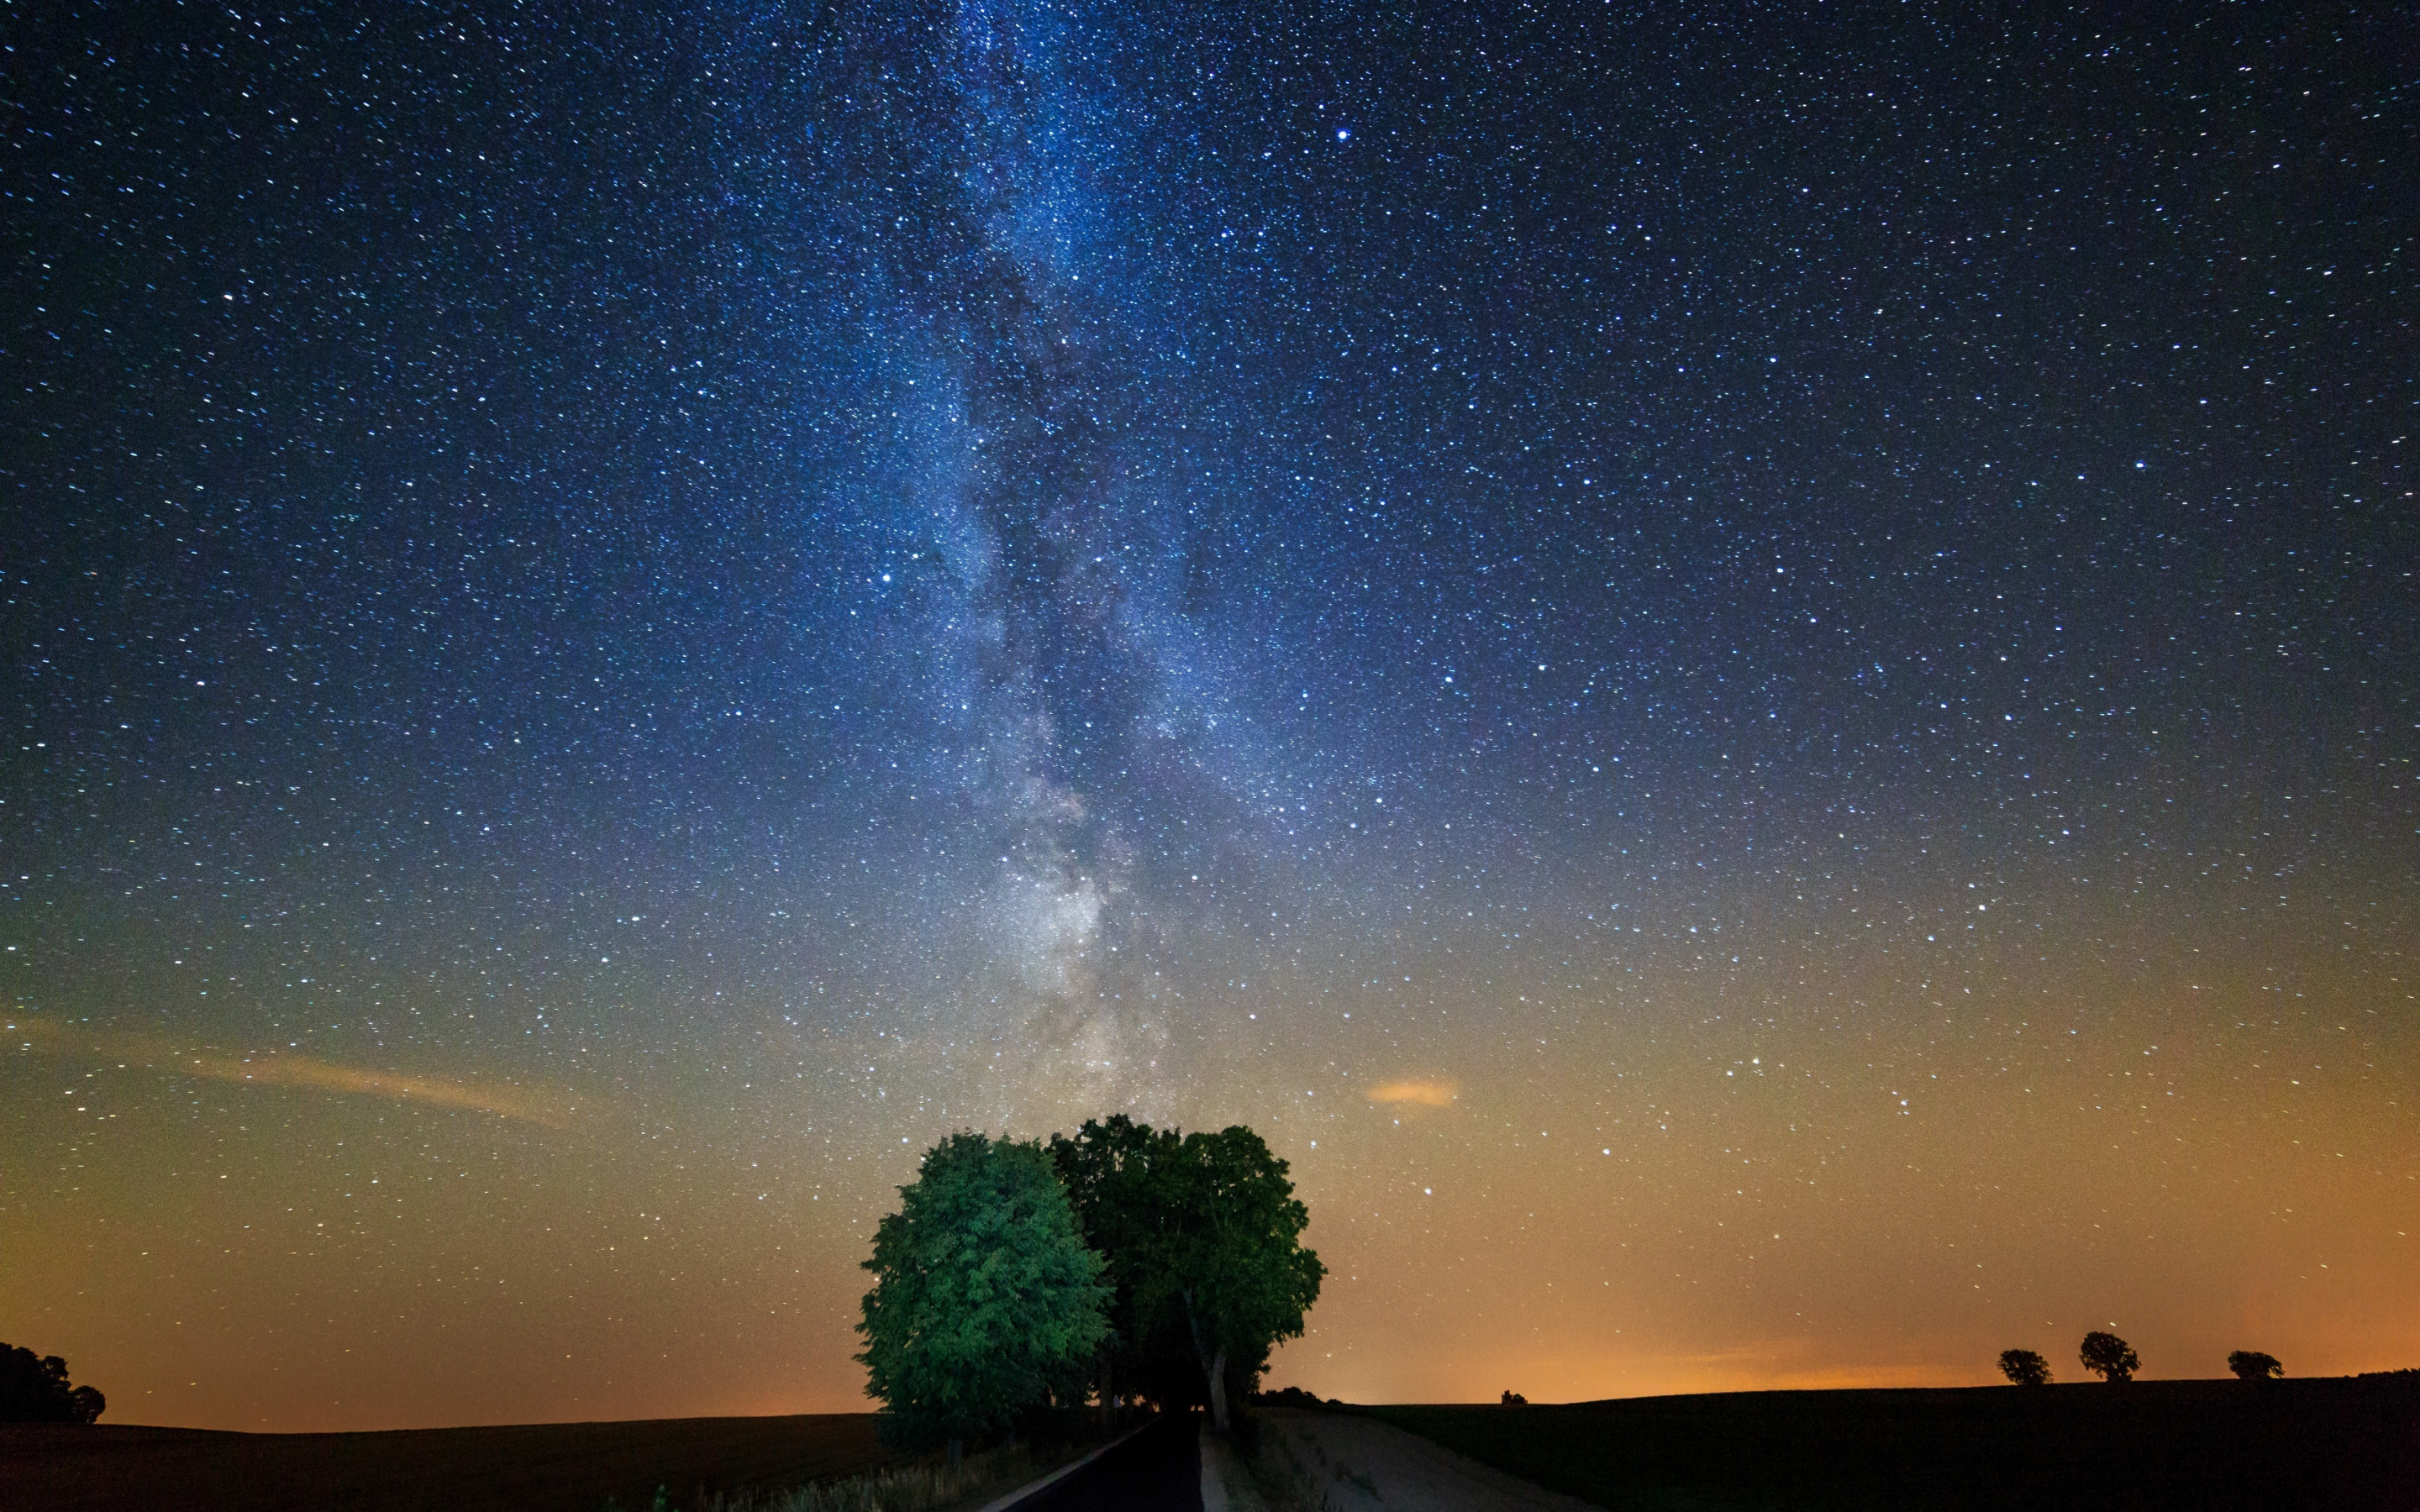 Tree, night, milky way, galaxy, stars, 2880x1800 wallpaper